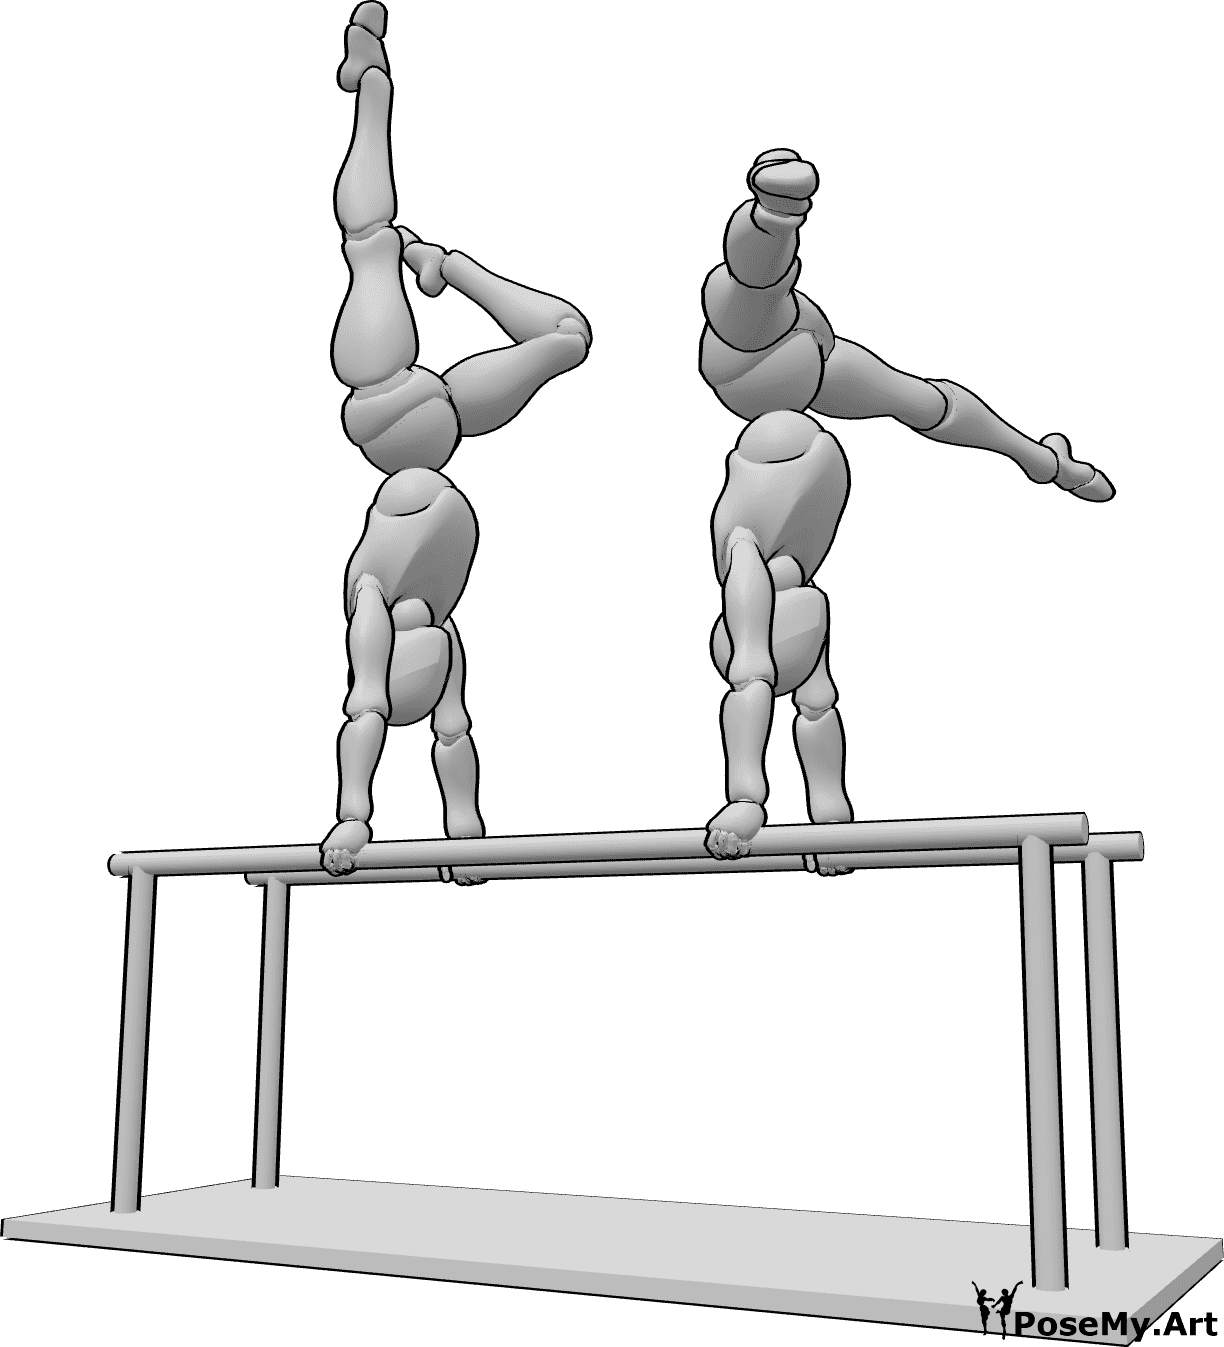 Référence des poses- Deux femmes posant pour la gymnastique - Deux femmes font de la gymnastique aux barres parallèles, en se tenant les mains et en levant les jambes.